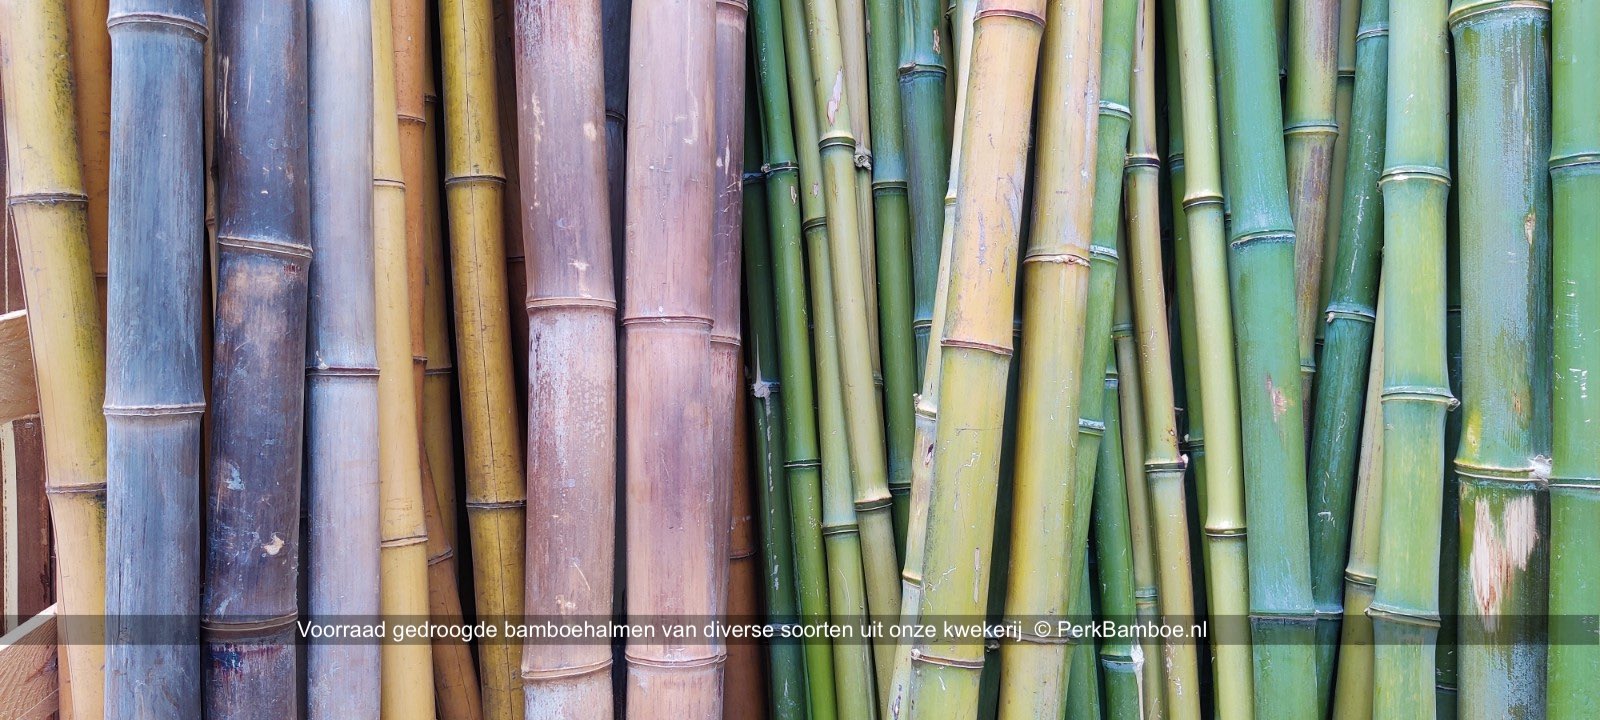 Verse en gedroogde bamboe stammen en halmen van onze kwekerij 4 PerkBamboe nl